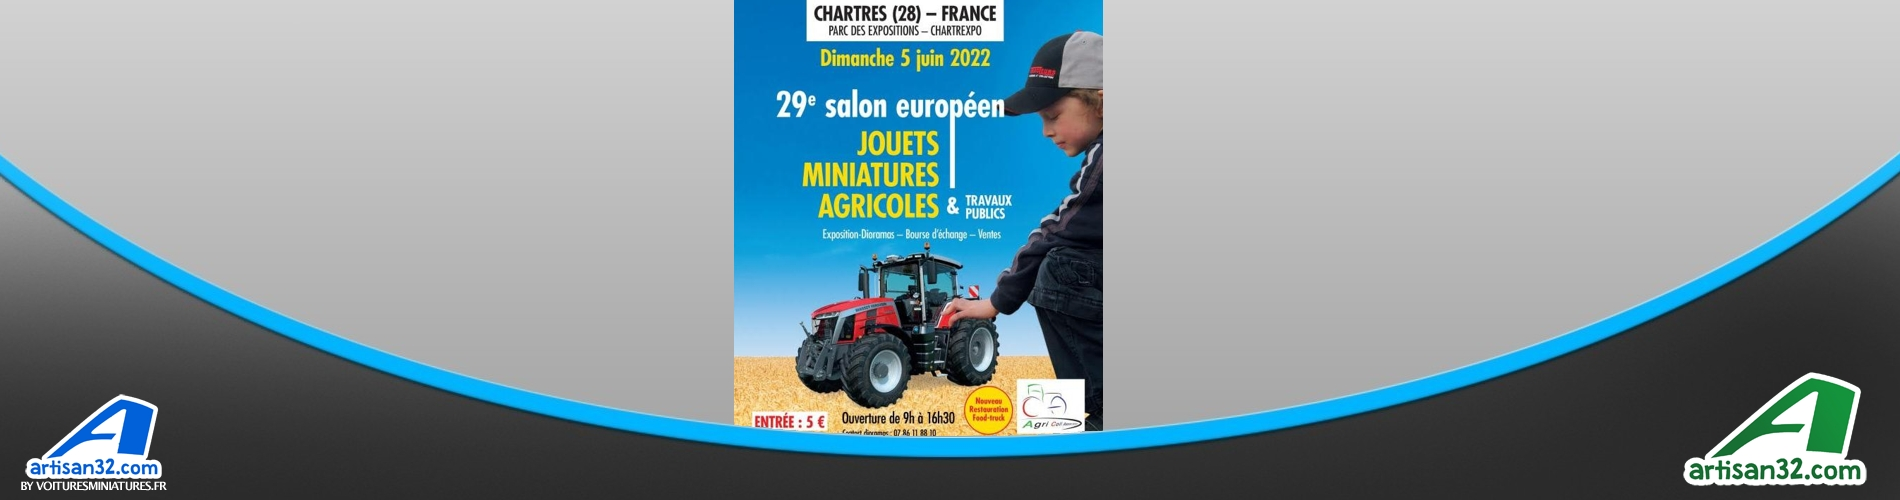 Chartrexpo 2022 : 29ème Salon Européen de la Miniature Agricole  Voitures Miniatures.fr